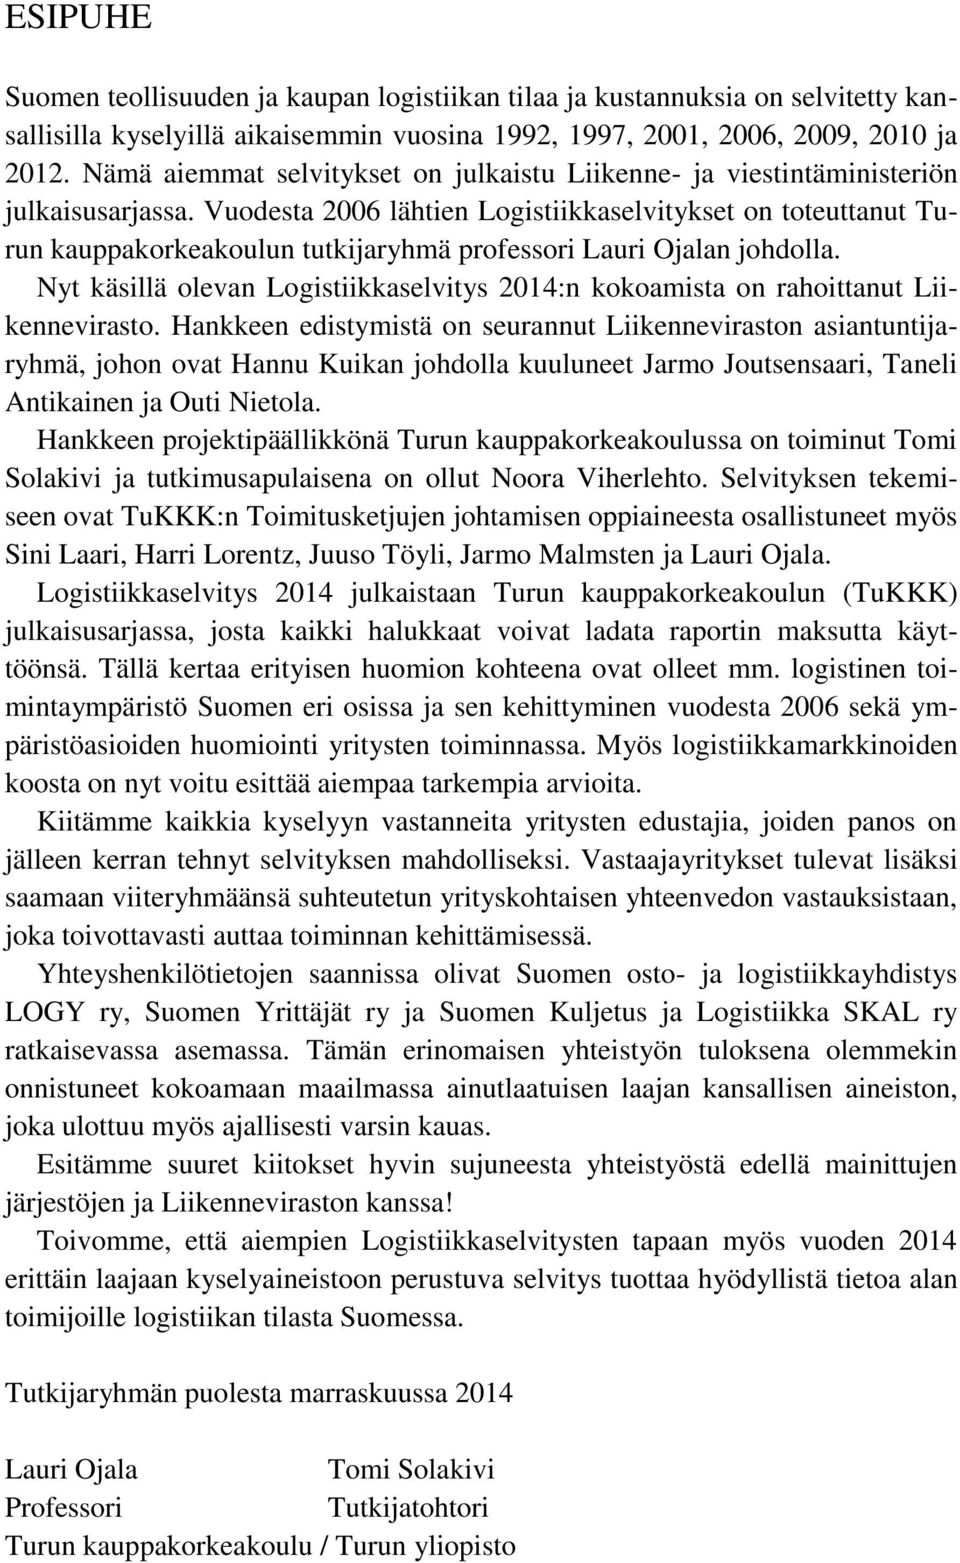 Vuodesta 2006 lähtien Logistiikkaselvitykset on toteuttanut Turun kauppakorkeakoulun tutkijaryhmä professori Lauri Ojalan johdolla.